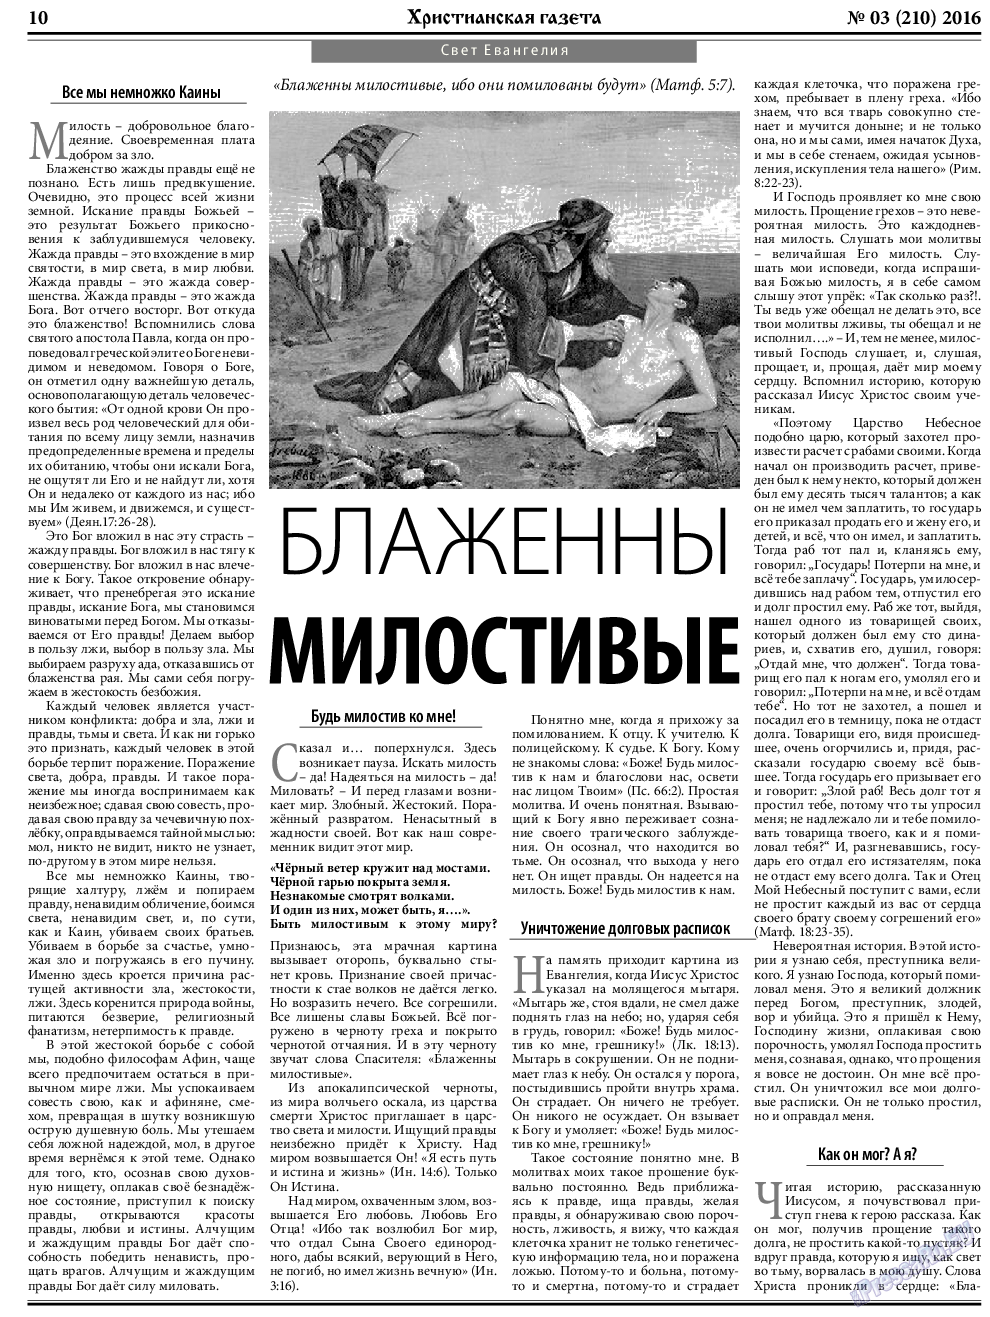 Христианская газета, газета. 2016 №3 стр.10